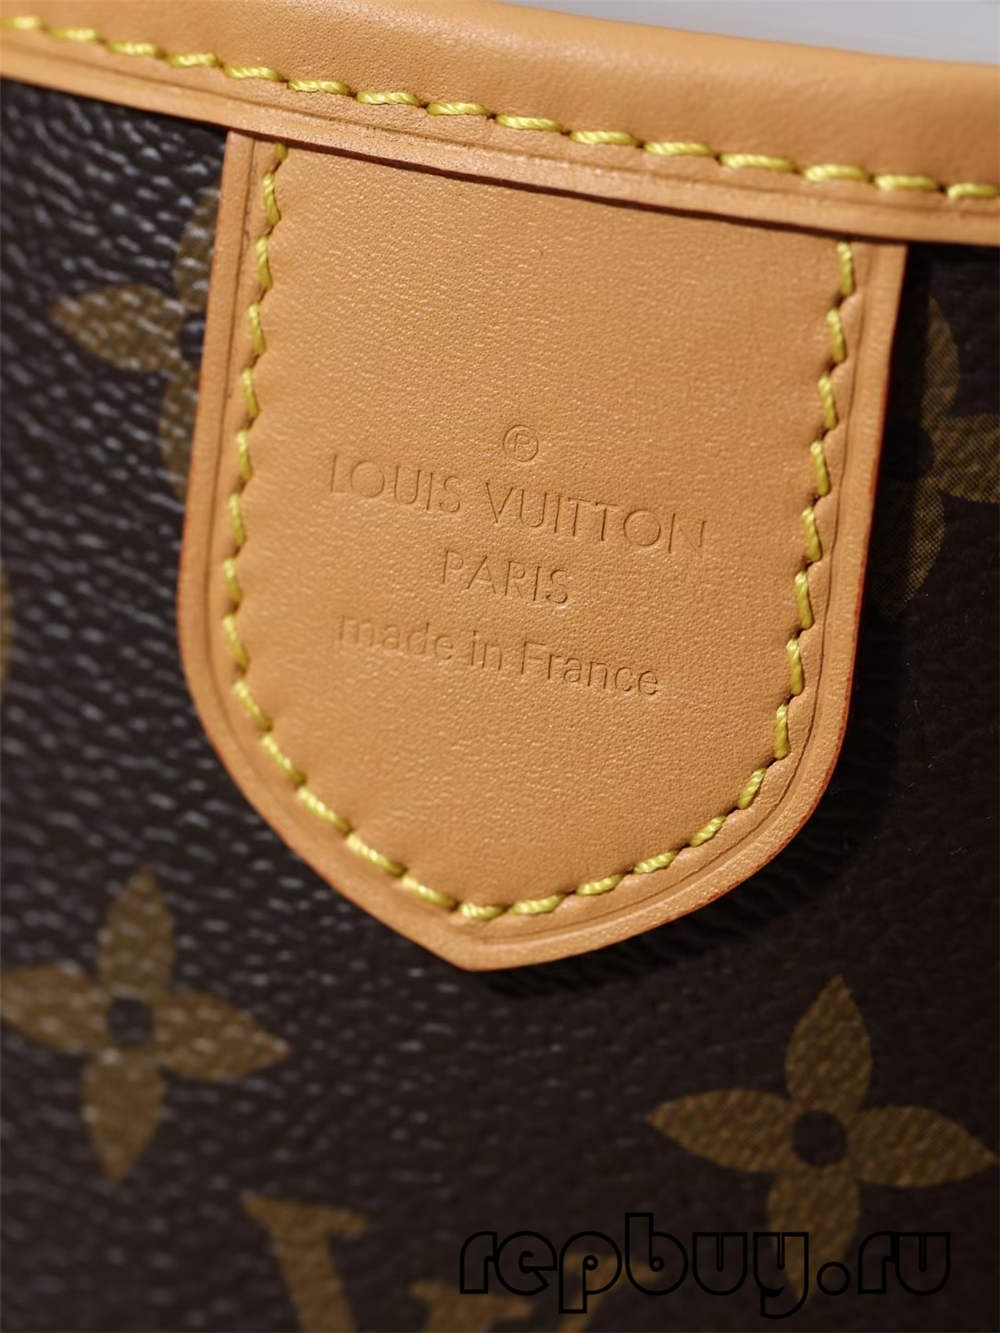 Louis Vuitton Re Fabrication çenteyên koplîka bi kalîteya top (2022 Herî Dawî)-Qalîteya herî çêtirîn Fake Louis Vuitton Bag Store Online, Çenteyê sêwiranerê kopîkî ru